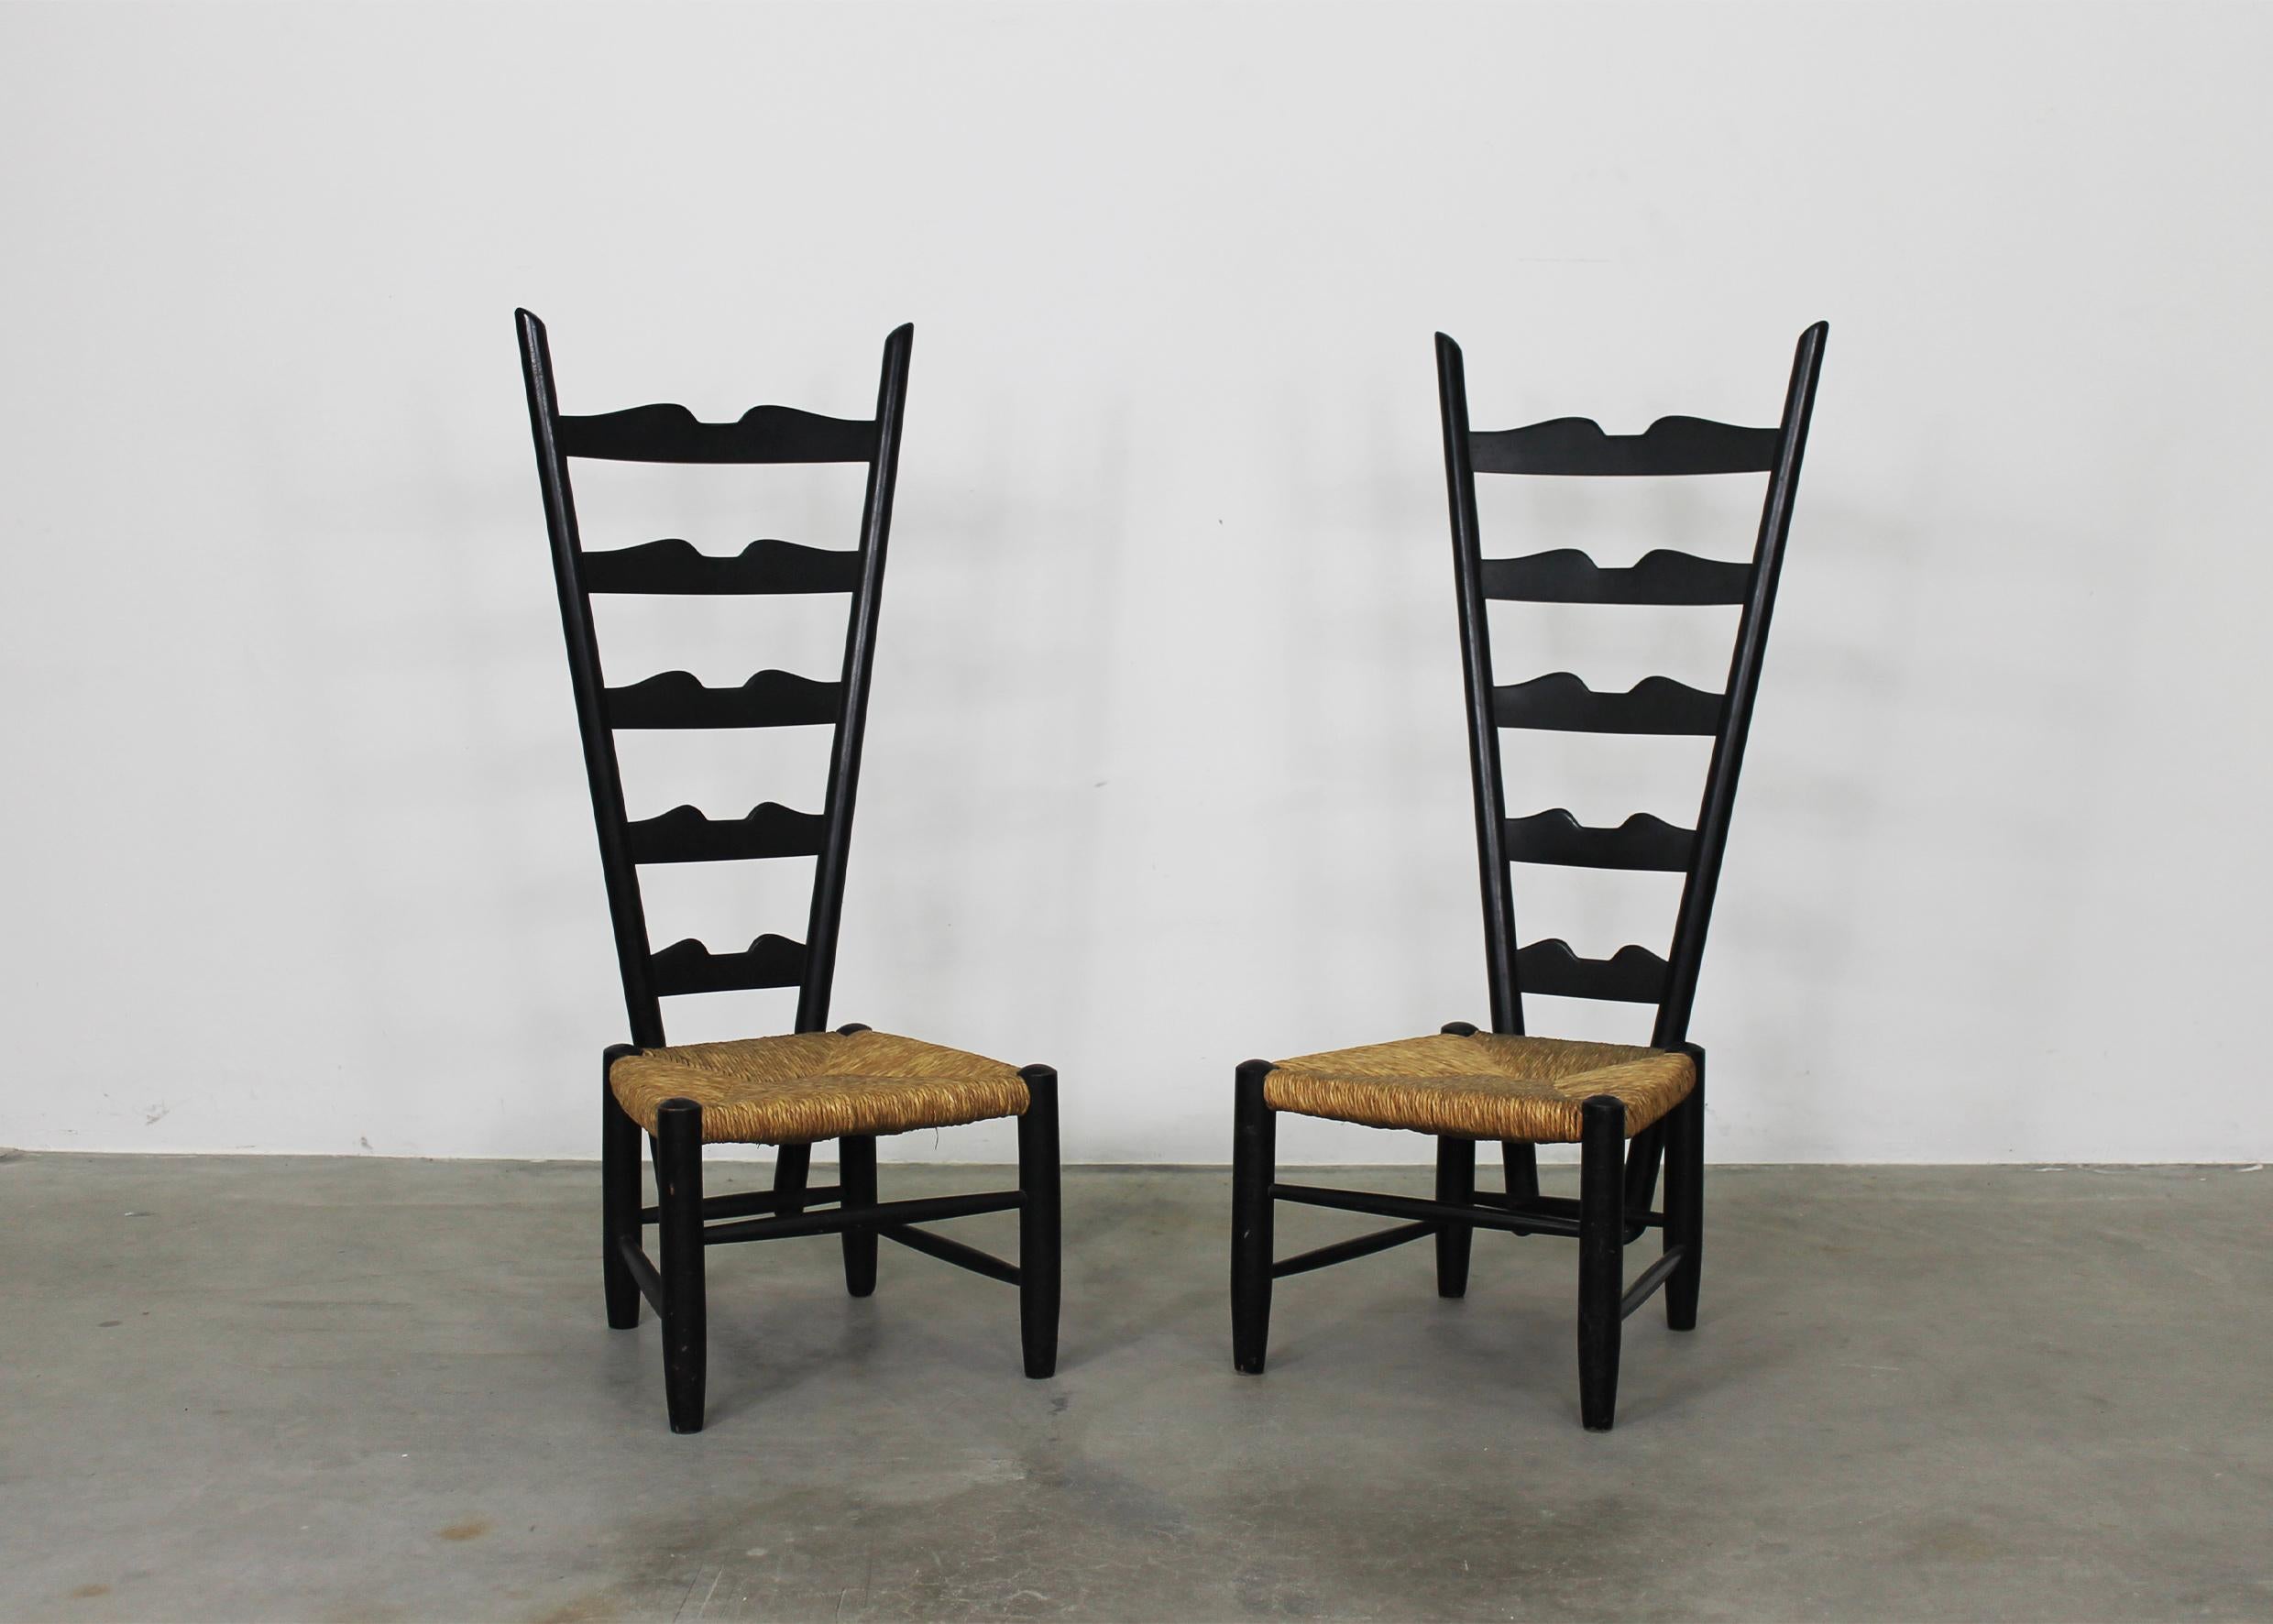 Couple de chaises de cheminée avec une structure en bois de hêtre laqué noir et une assise en jonc tissé à la main. 
Cette chaise de cheminée emblématique a été conçue par Gio Ponti en 1939 et produite par Casa & Giardino dans les années